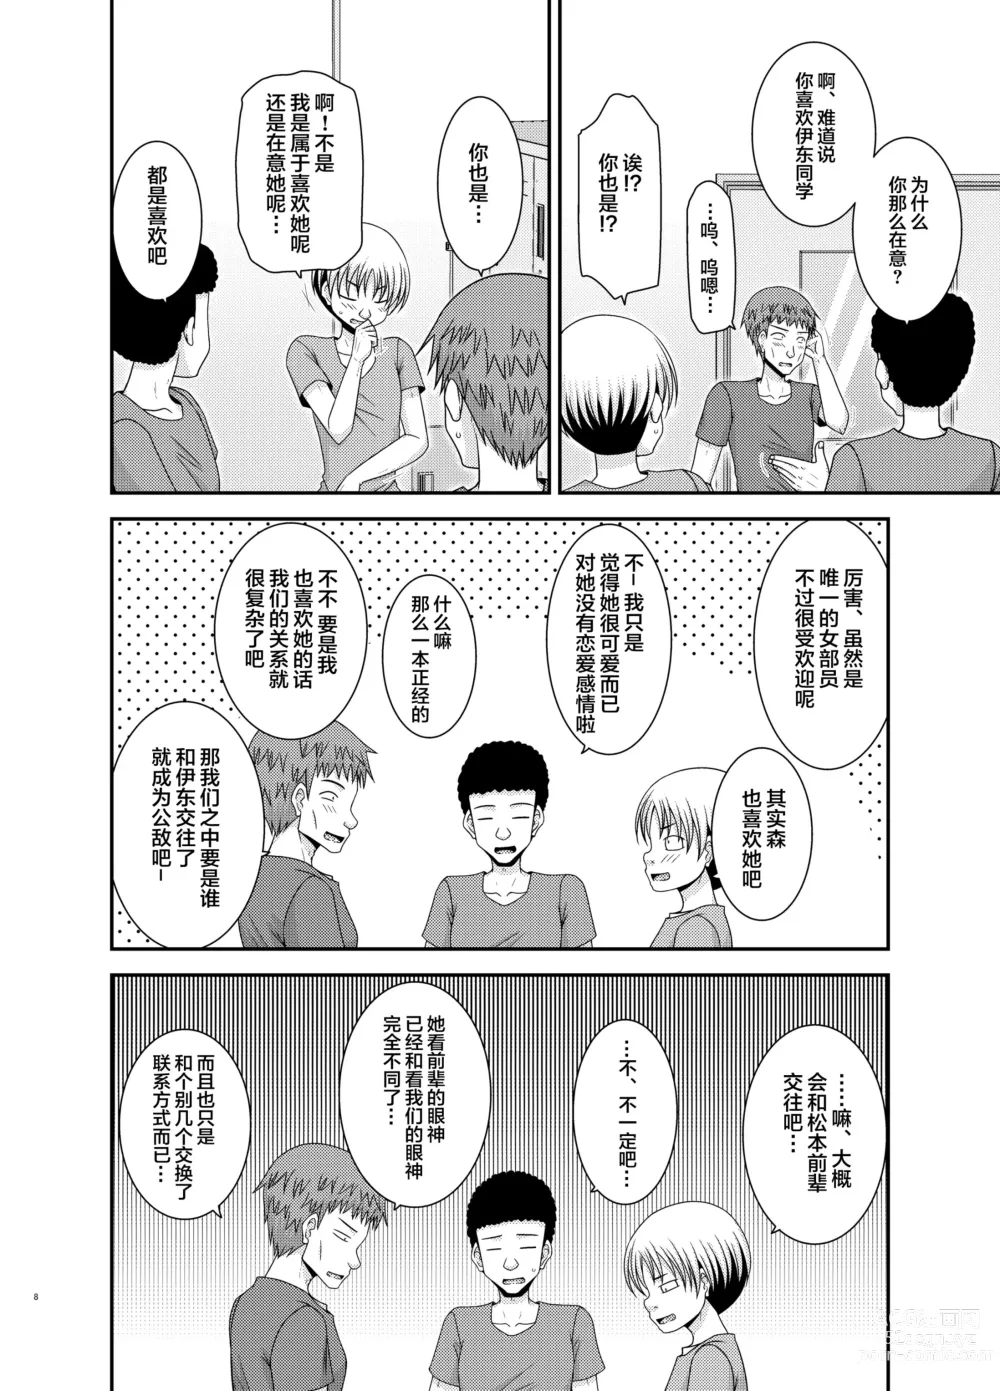 Page 5 of manga Nozokare Roshutsu Shoujo